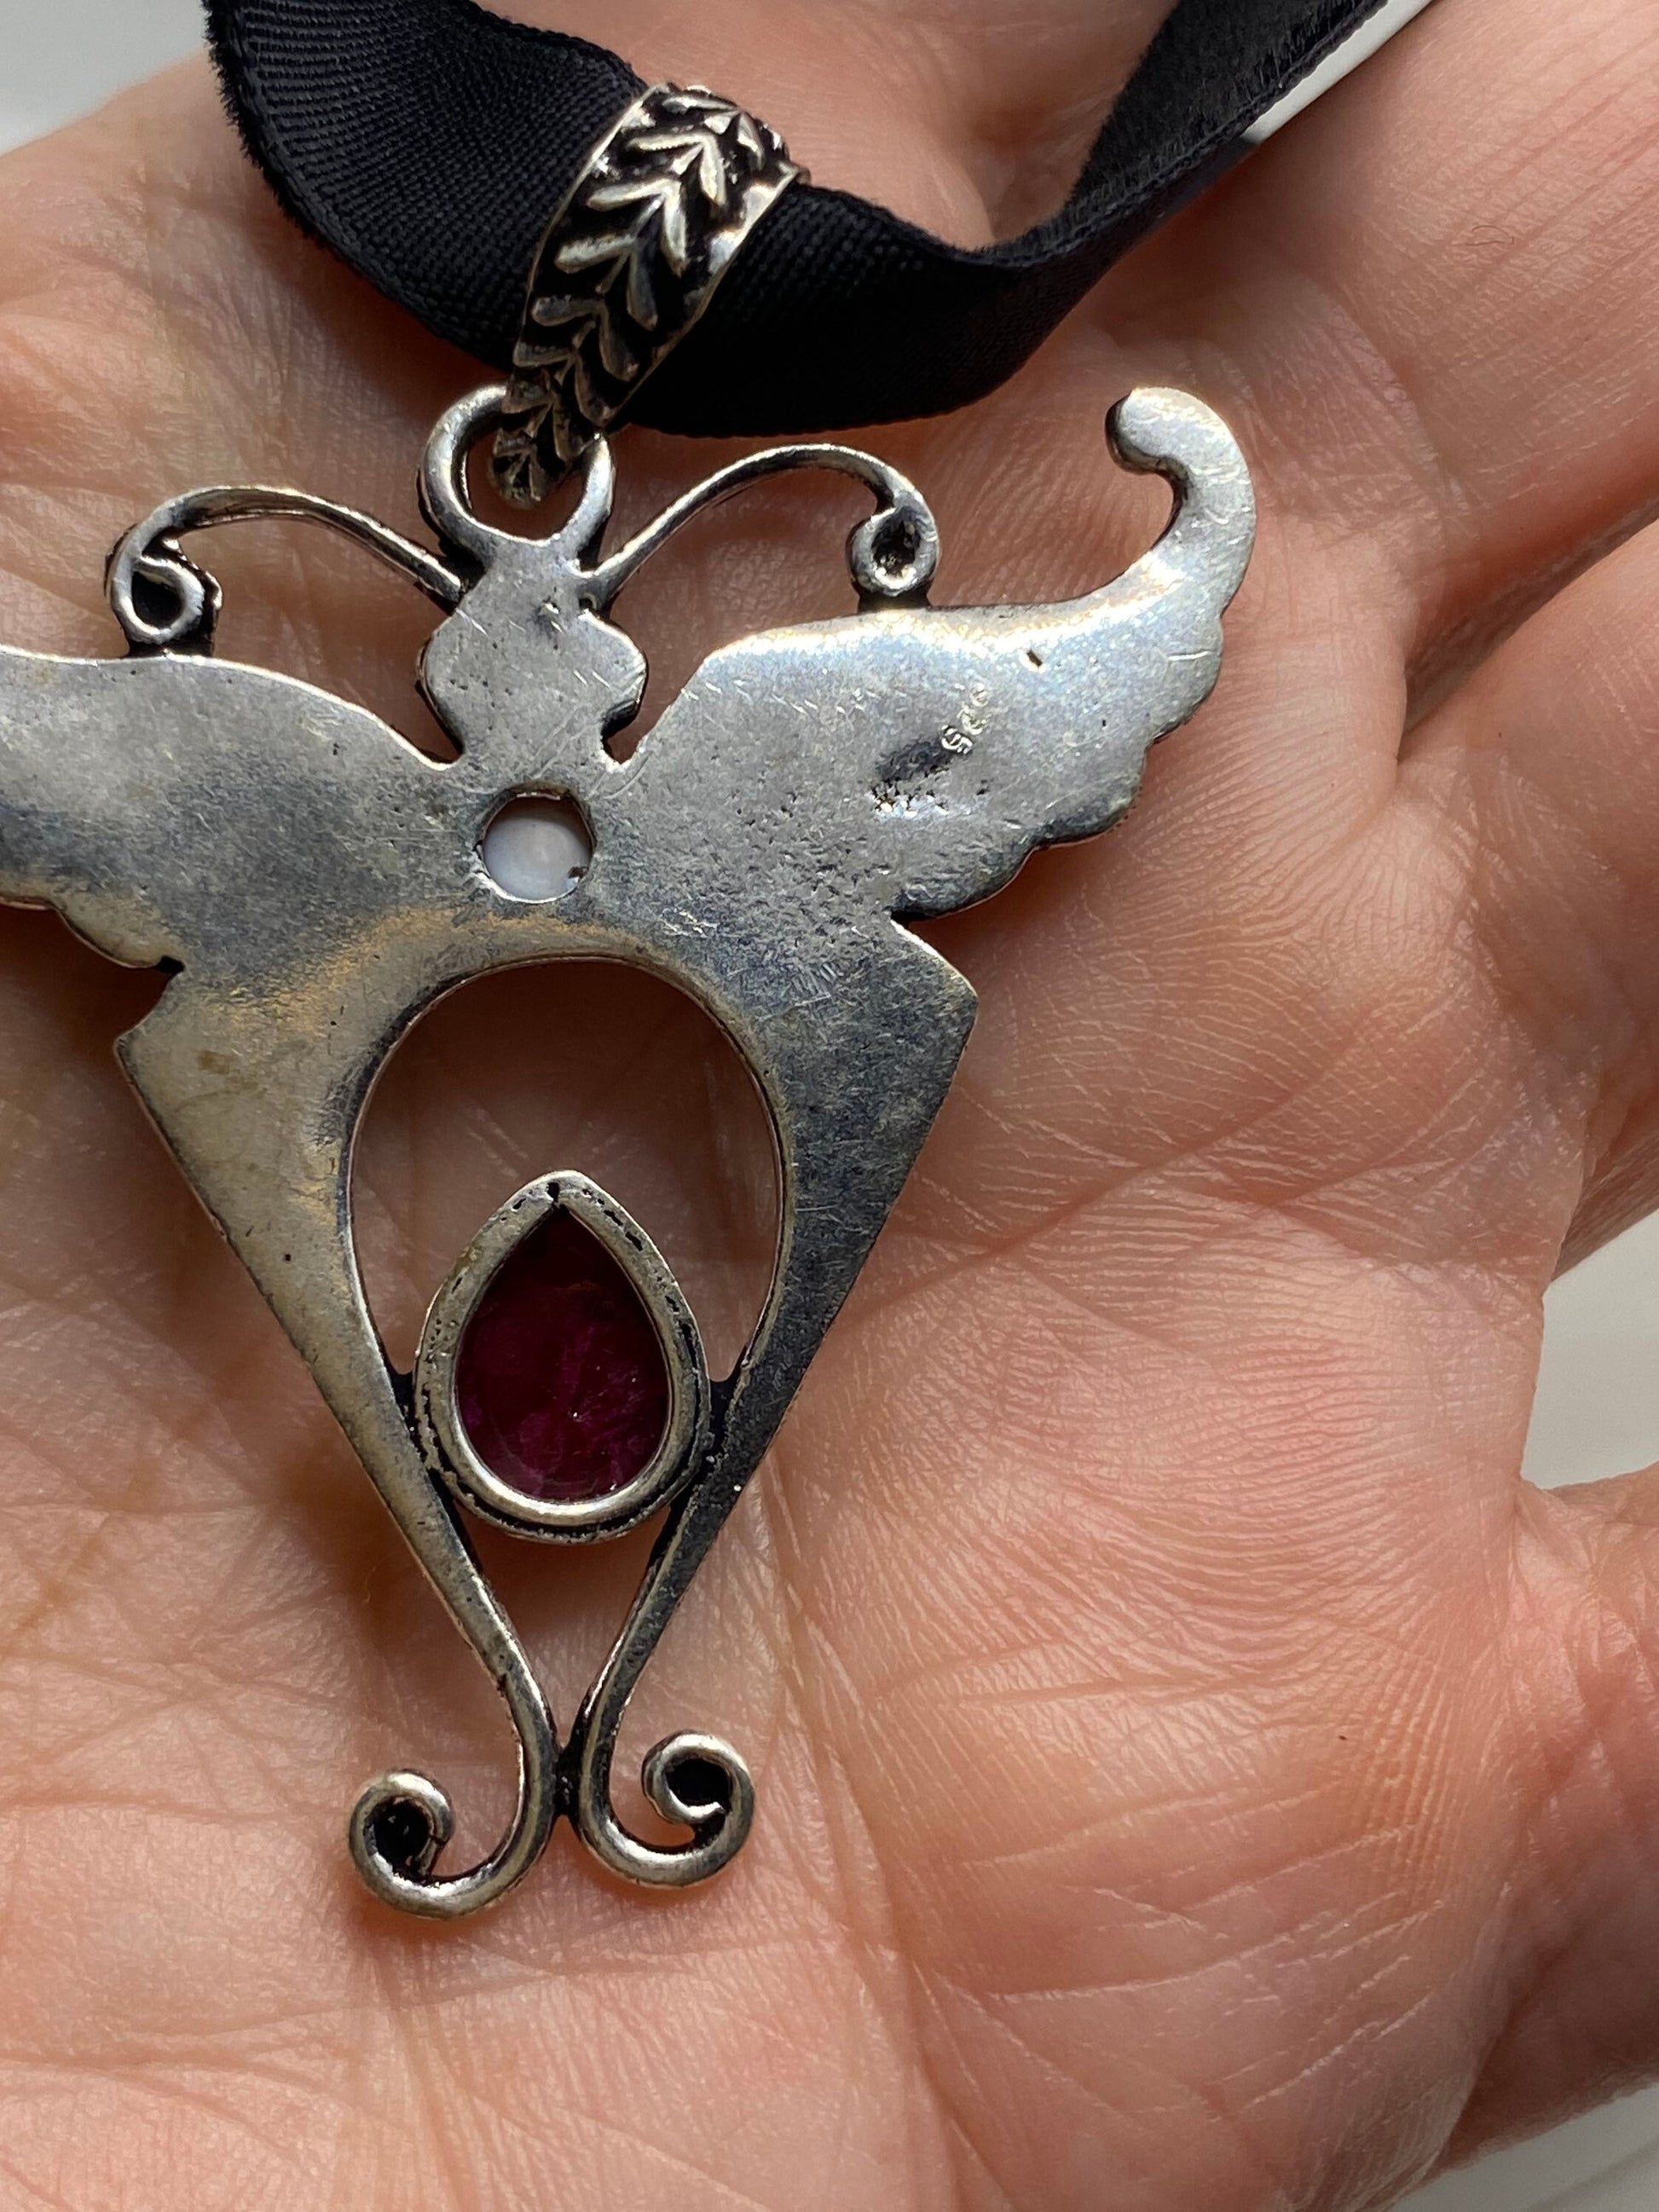 Vintage Lunar Moth Choker Blue Mystic Topaz and Garnet Necklace